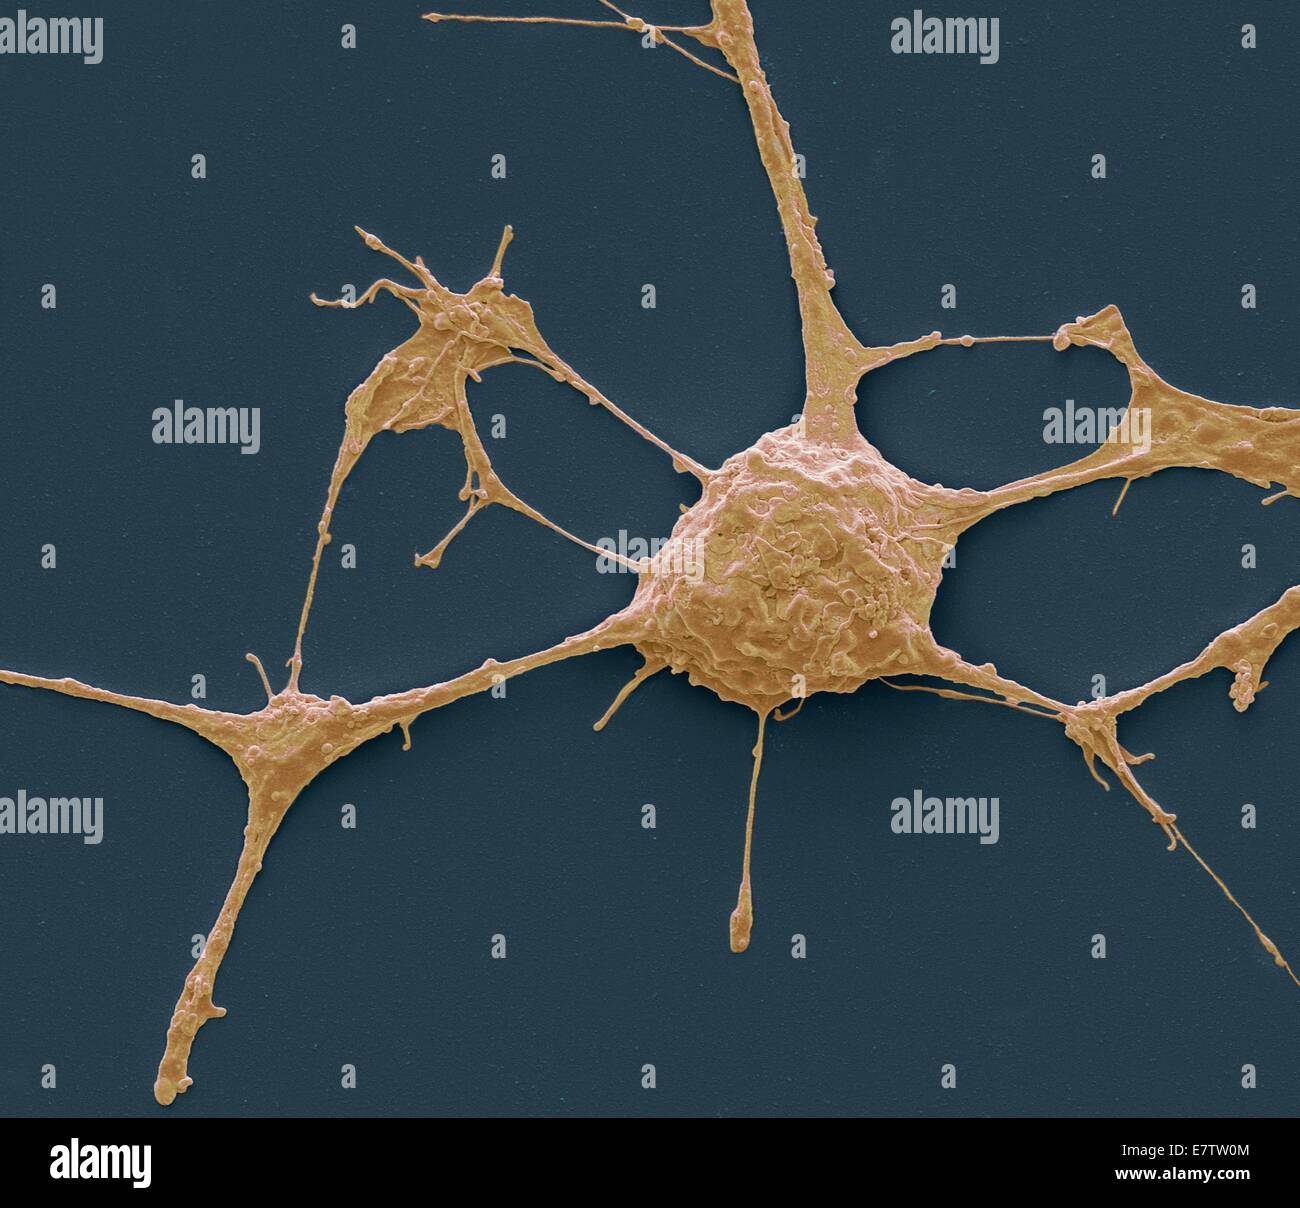 Neurone. Micrografia al microscopio elettronico a scansione (SEM) di un PC12 neurone nella cultura.La linea cellulare PC12, sviluppato da un feocromocitoma tumore del ratto del midollo surrenale è diventata una premiere modello per lo studio della differenziazione neuronale. Quando trattate nella cultura Foto Stock